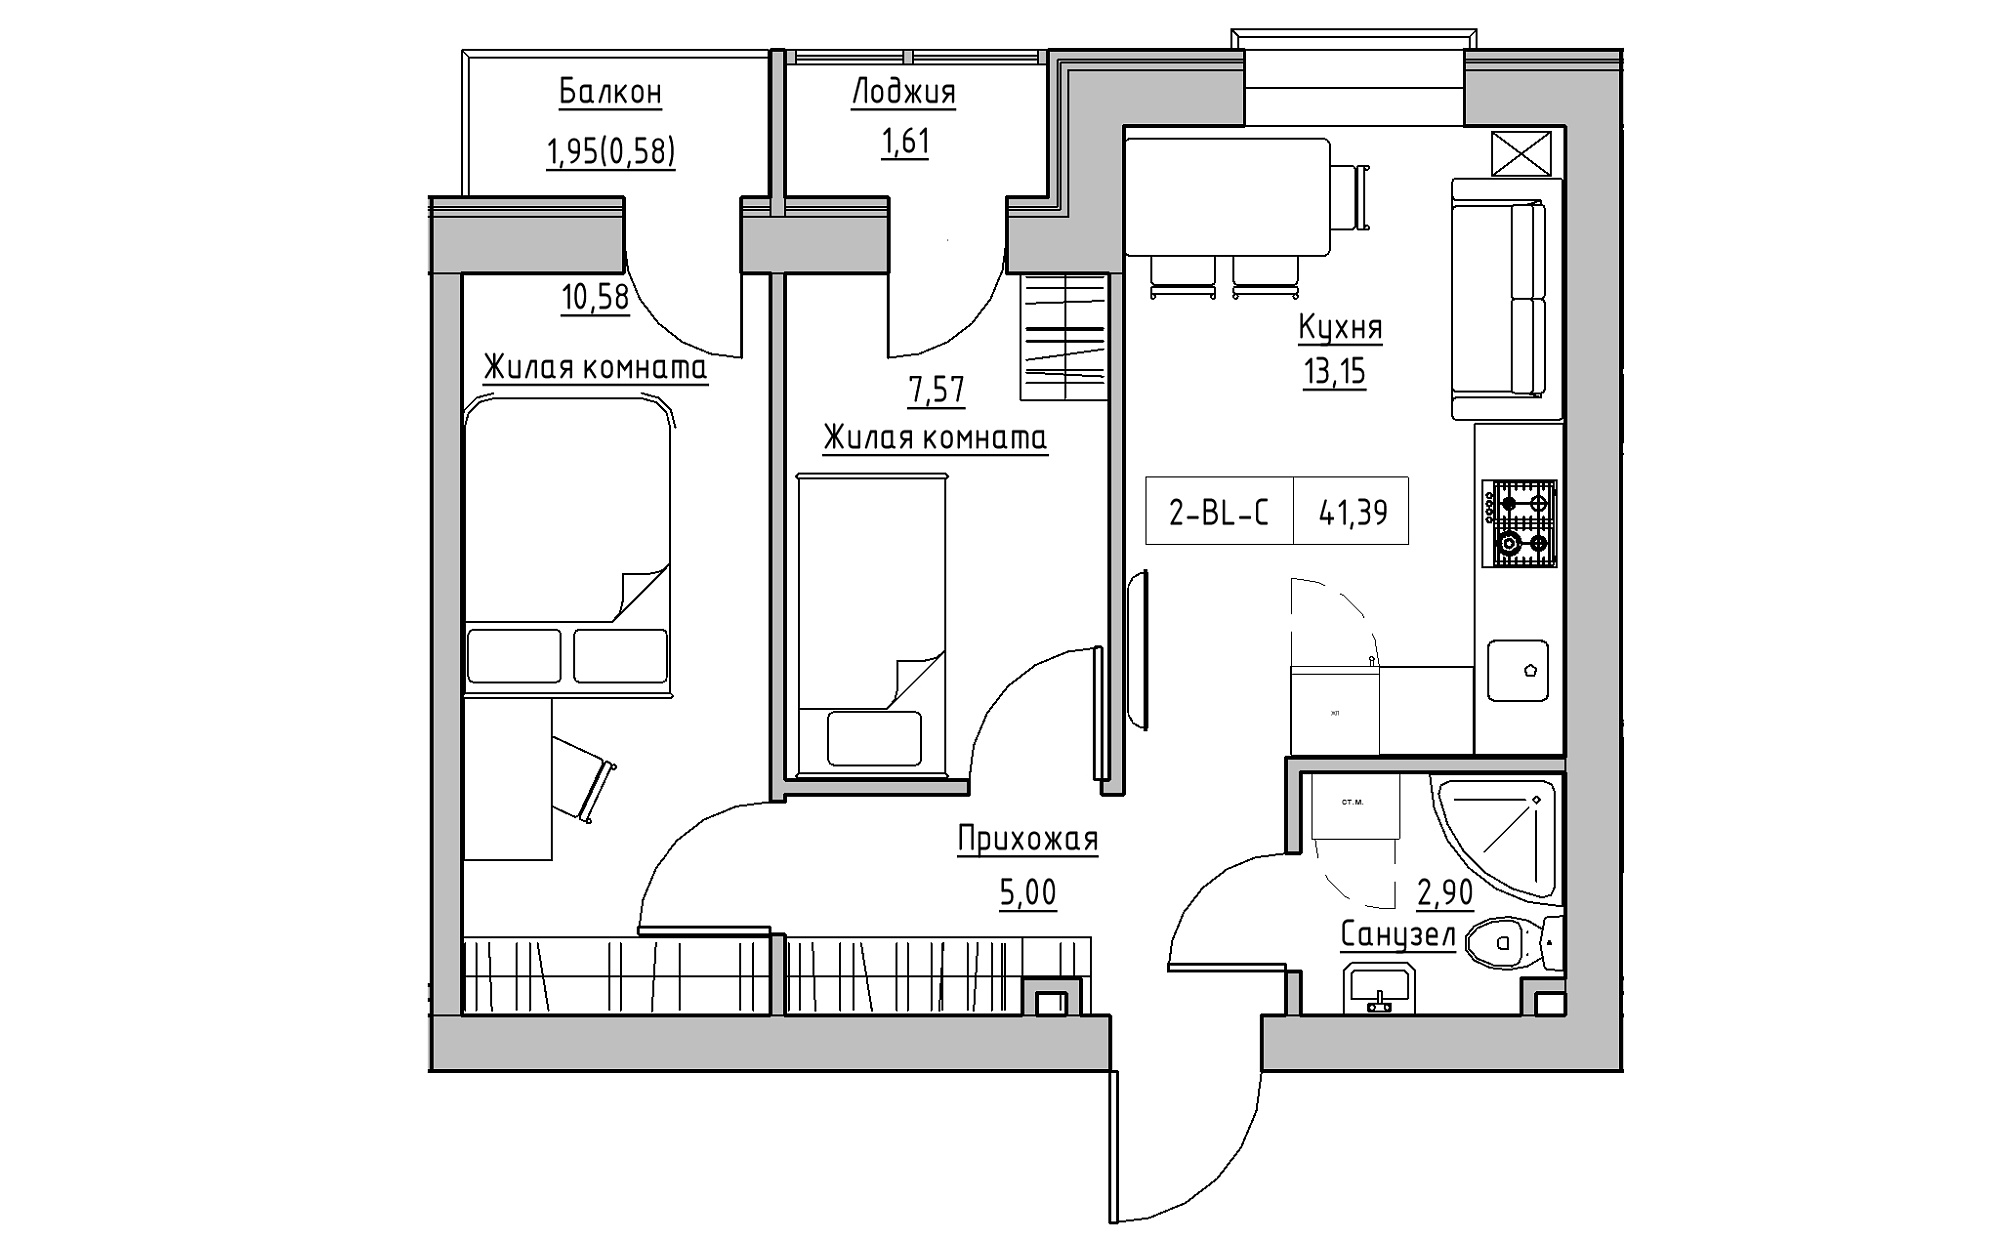 Планування 2-к квартира площею 41.39м2, KS-022-02/0005.